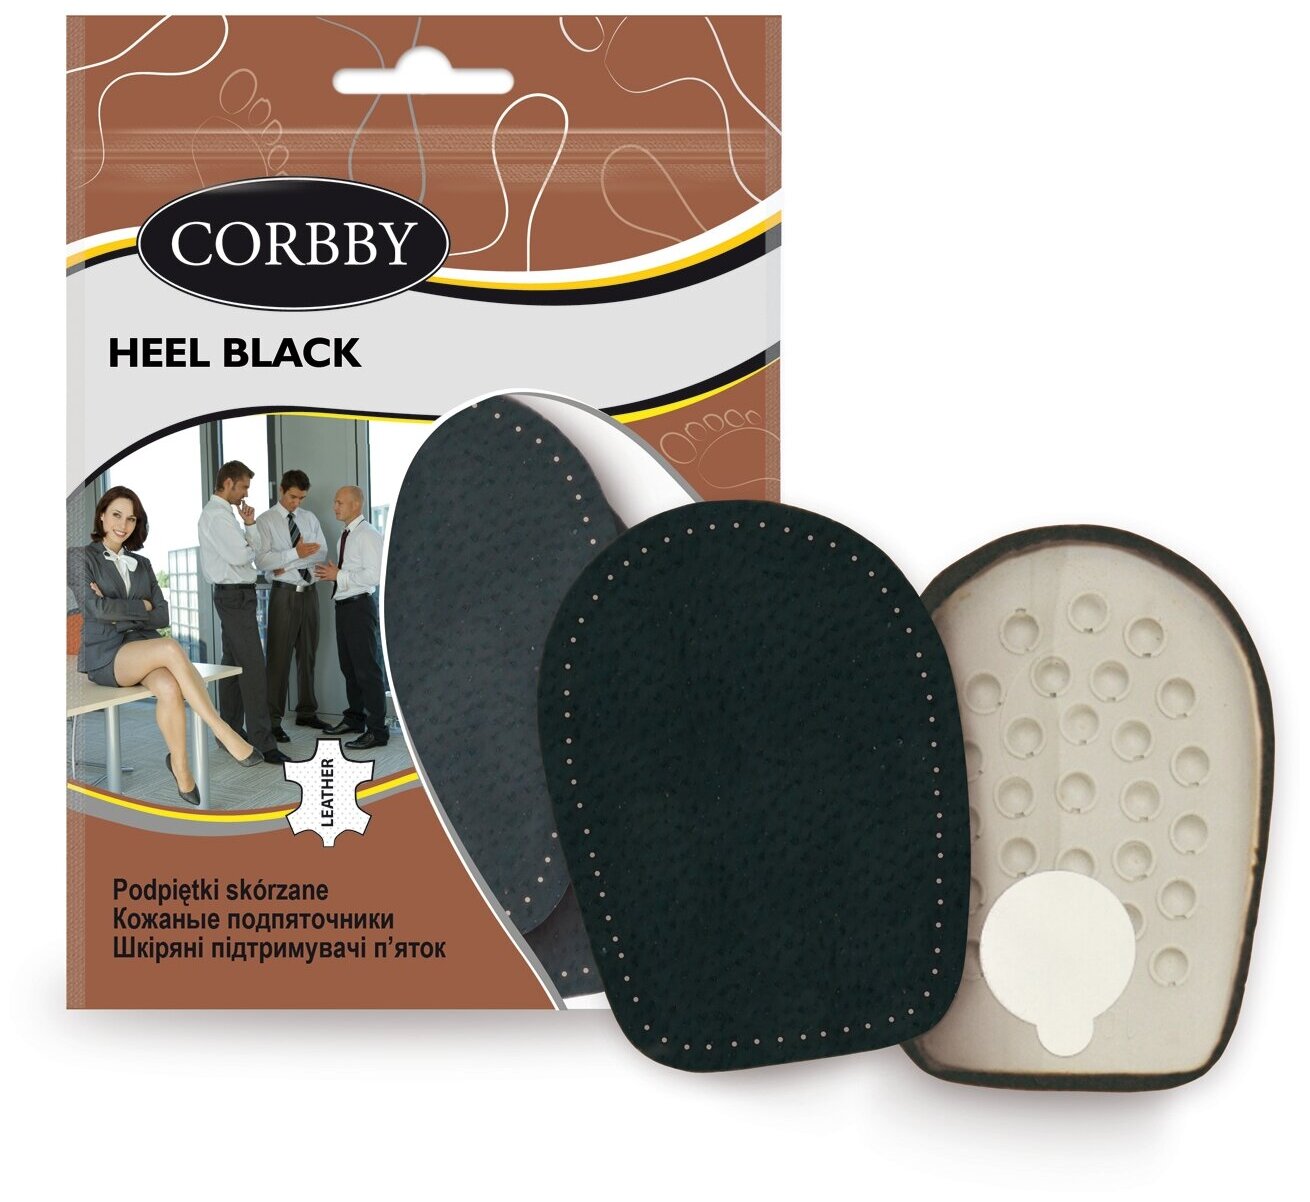 Corbby HALF BLACK полустельки под мысок из высококачественной натуральной кожи. Размер 35/36